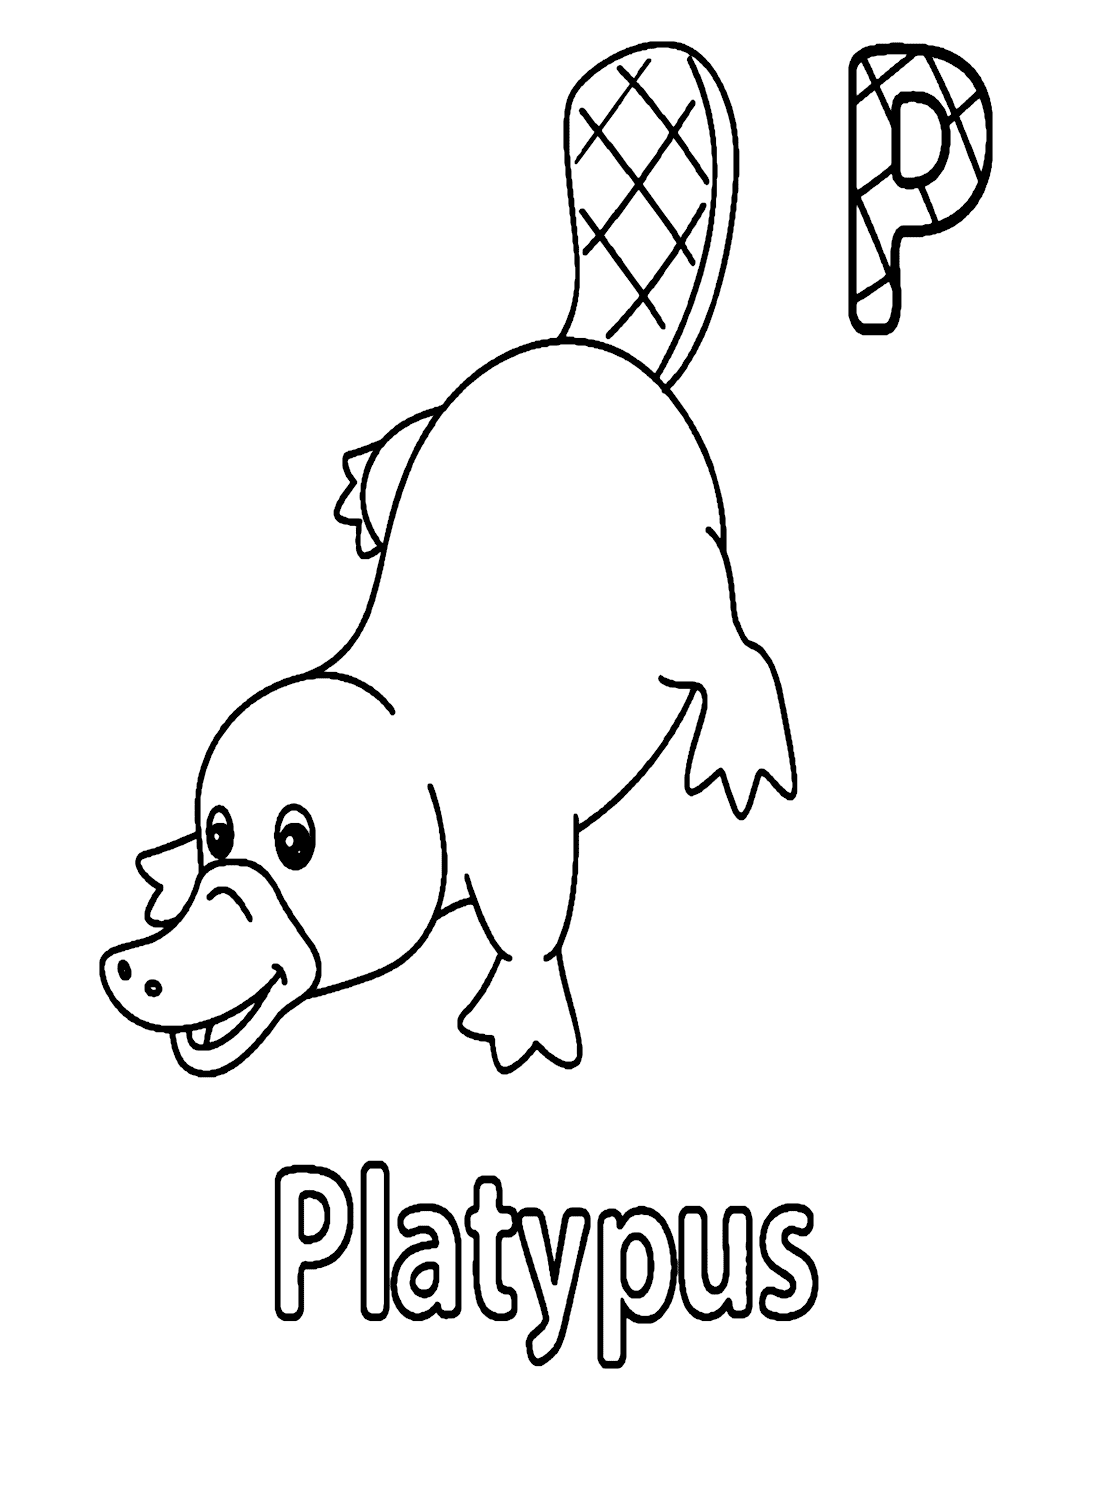 Lettre P pour Platypus de Platypus